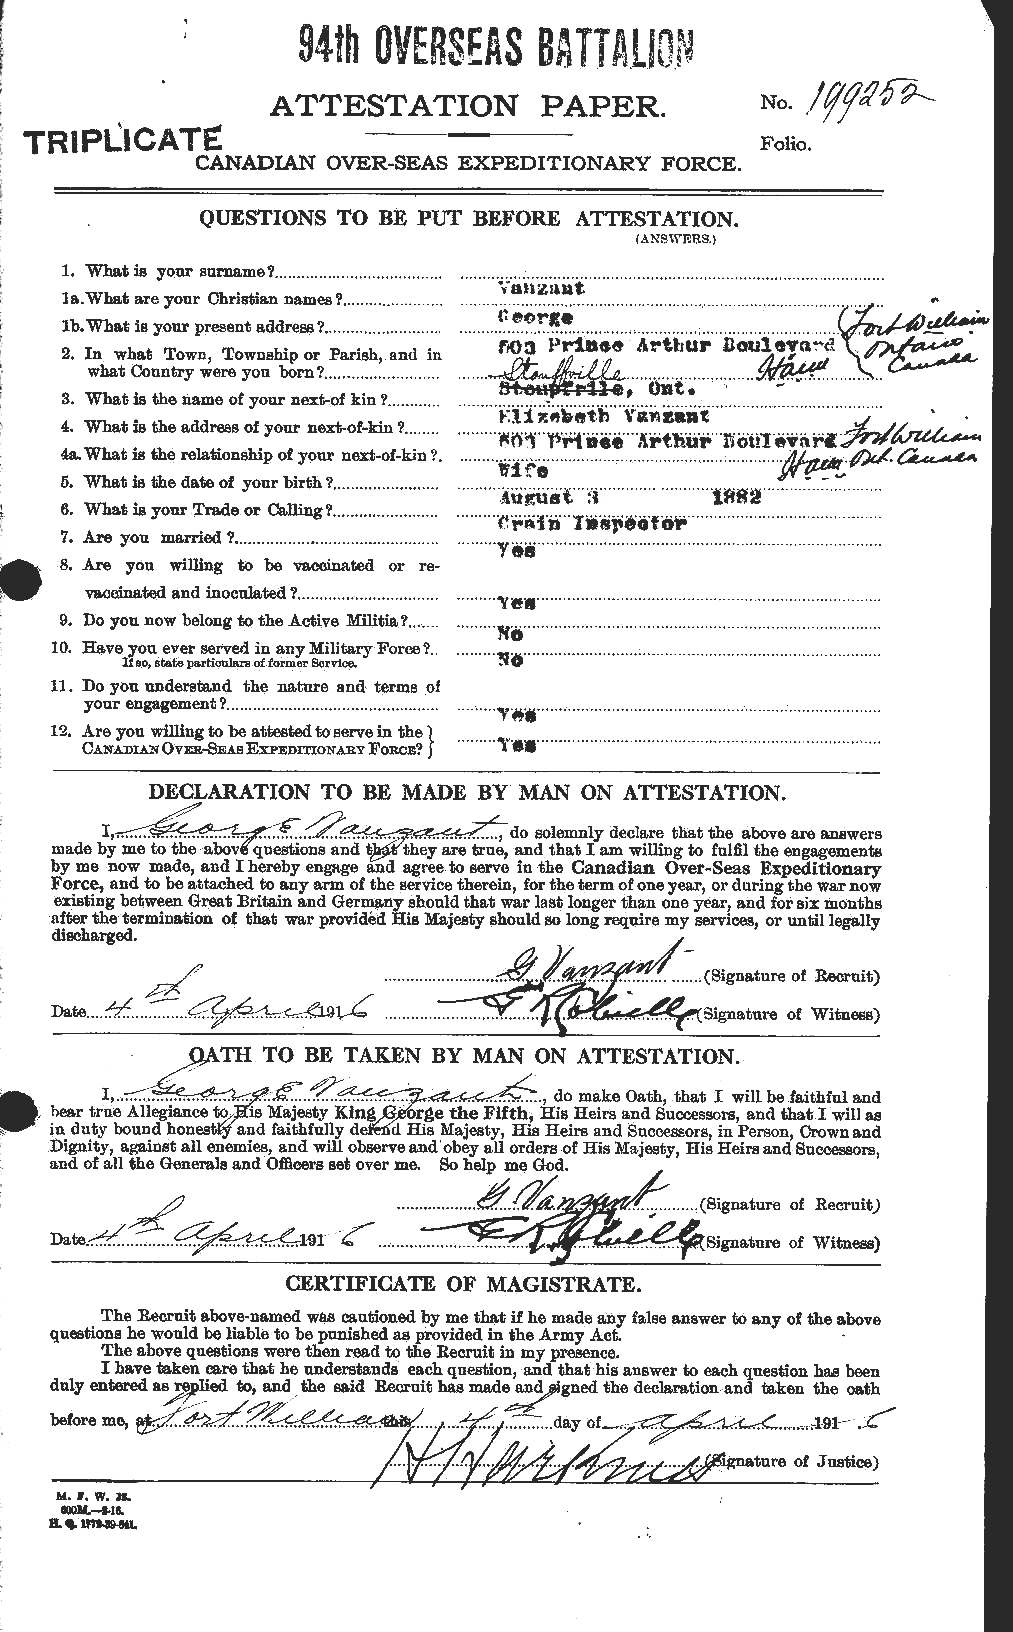 Dossiers du Personnel de la Première Guerre mondiale - CEC 645568a